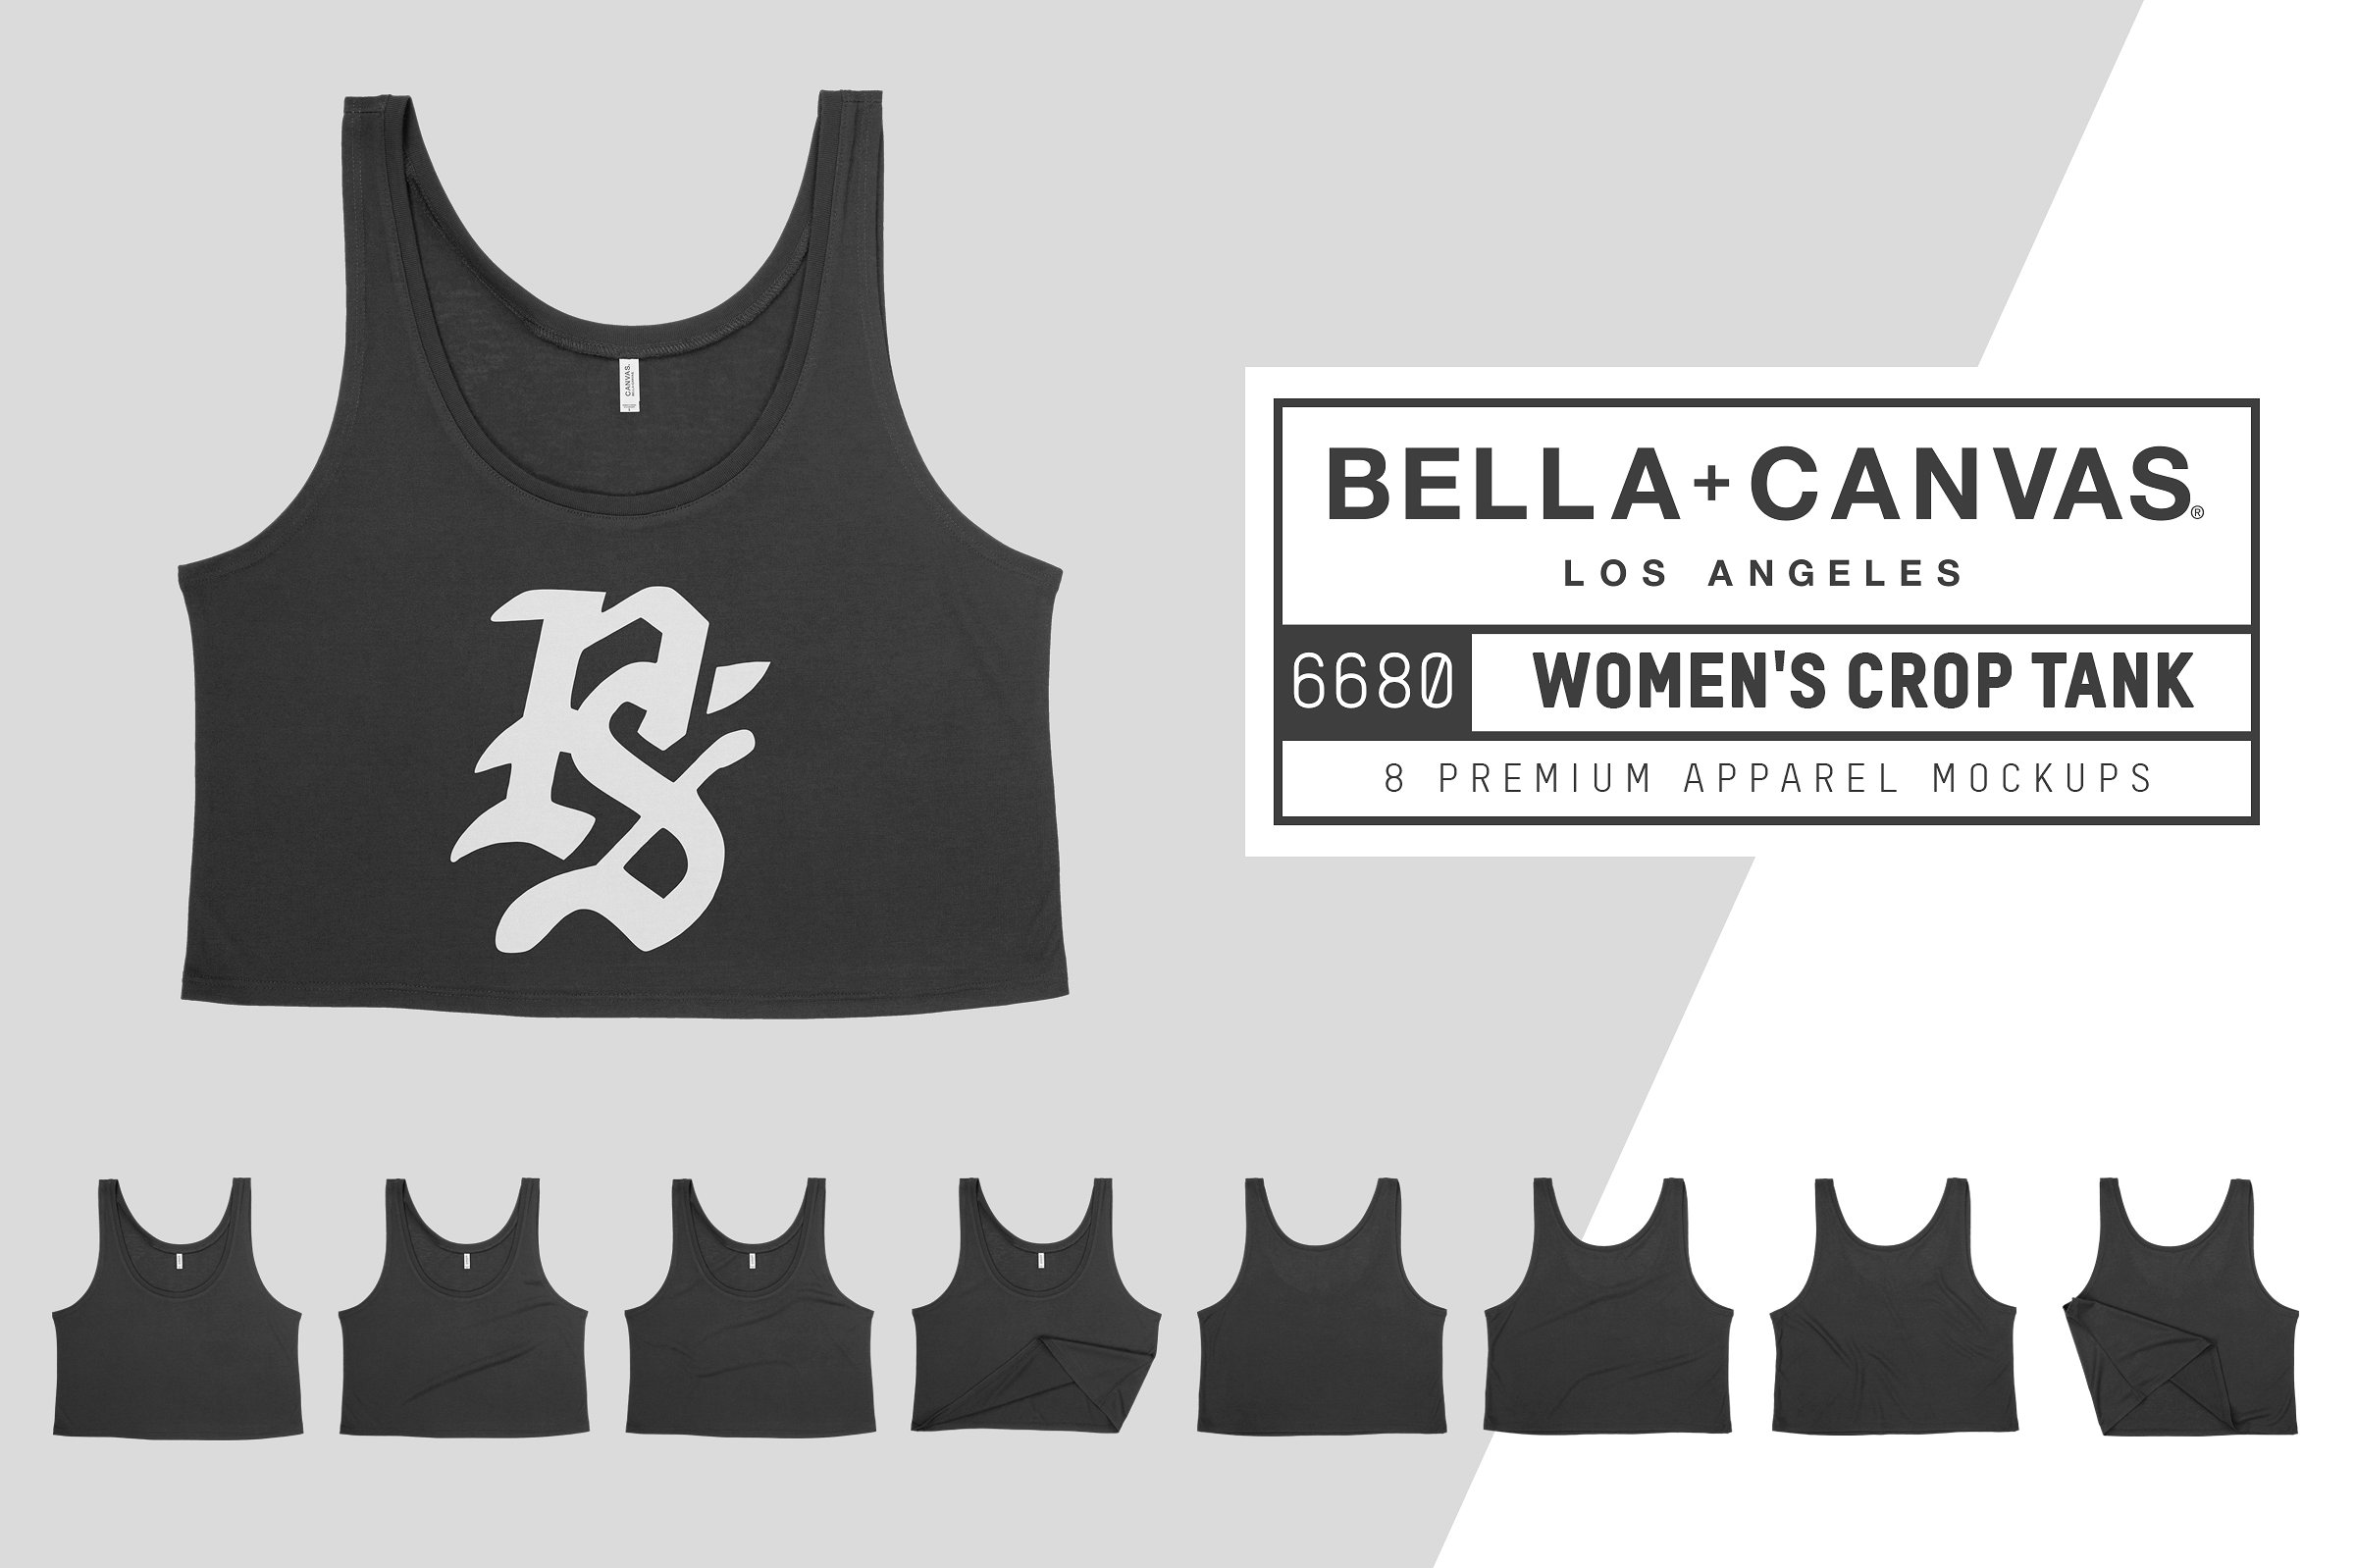 超短款女士运动背心服装样机 Bella Canvas 6680 Women’s Crop Tank插图